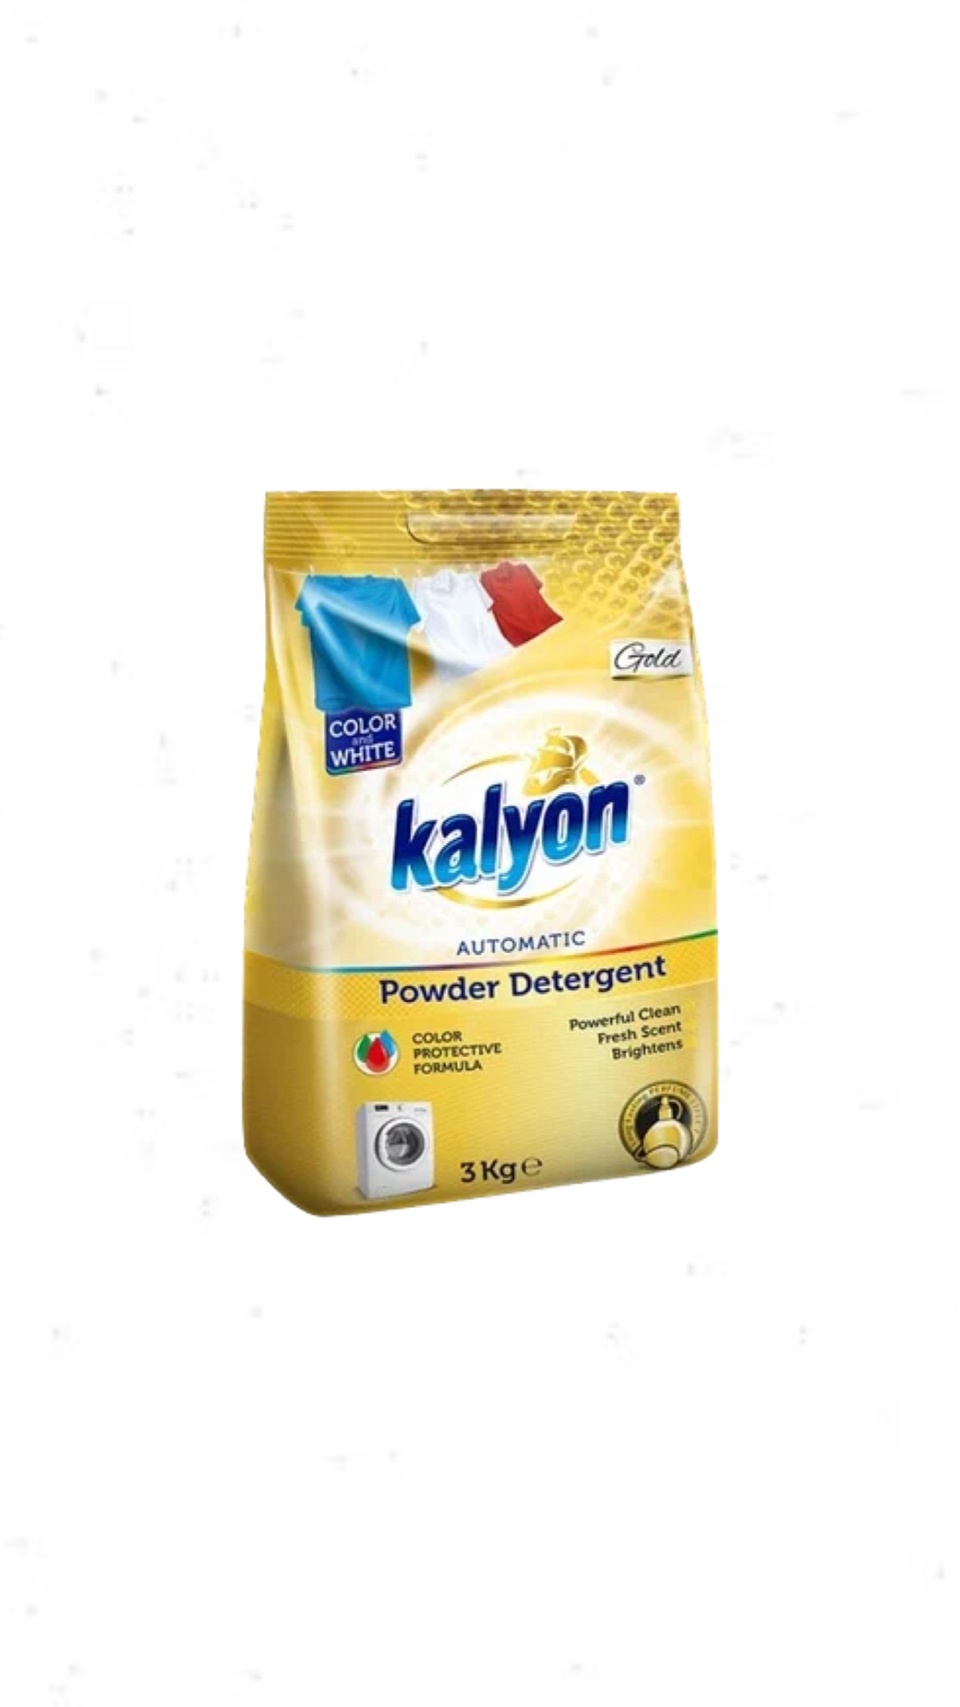 Порошок стиральный автомат для белого и цветного белья KALYON POWDER DETERGENT Золото 3 кг - 500 ₽, заказать онлайн.